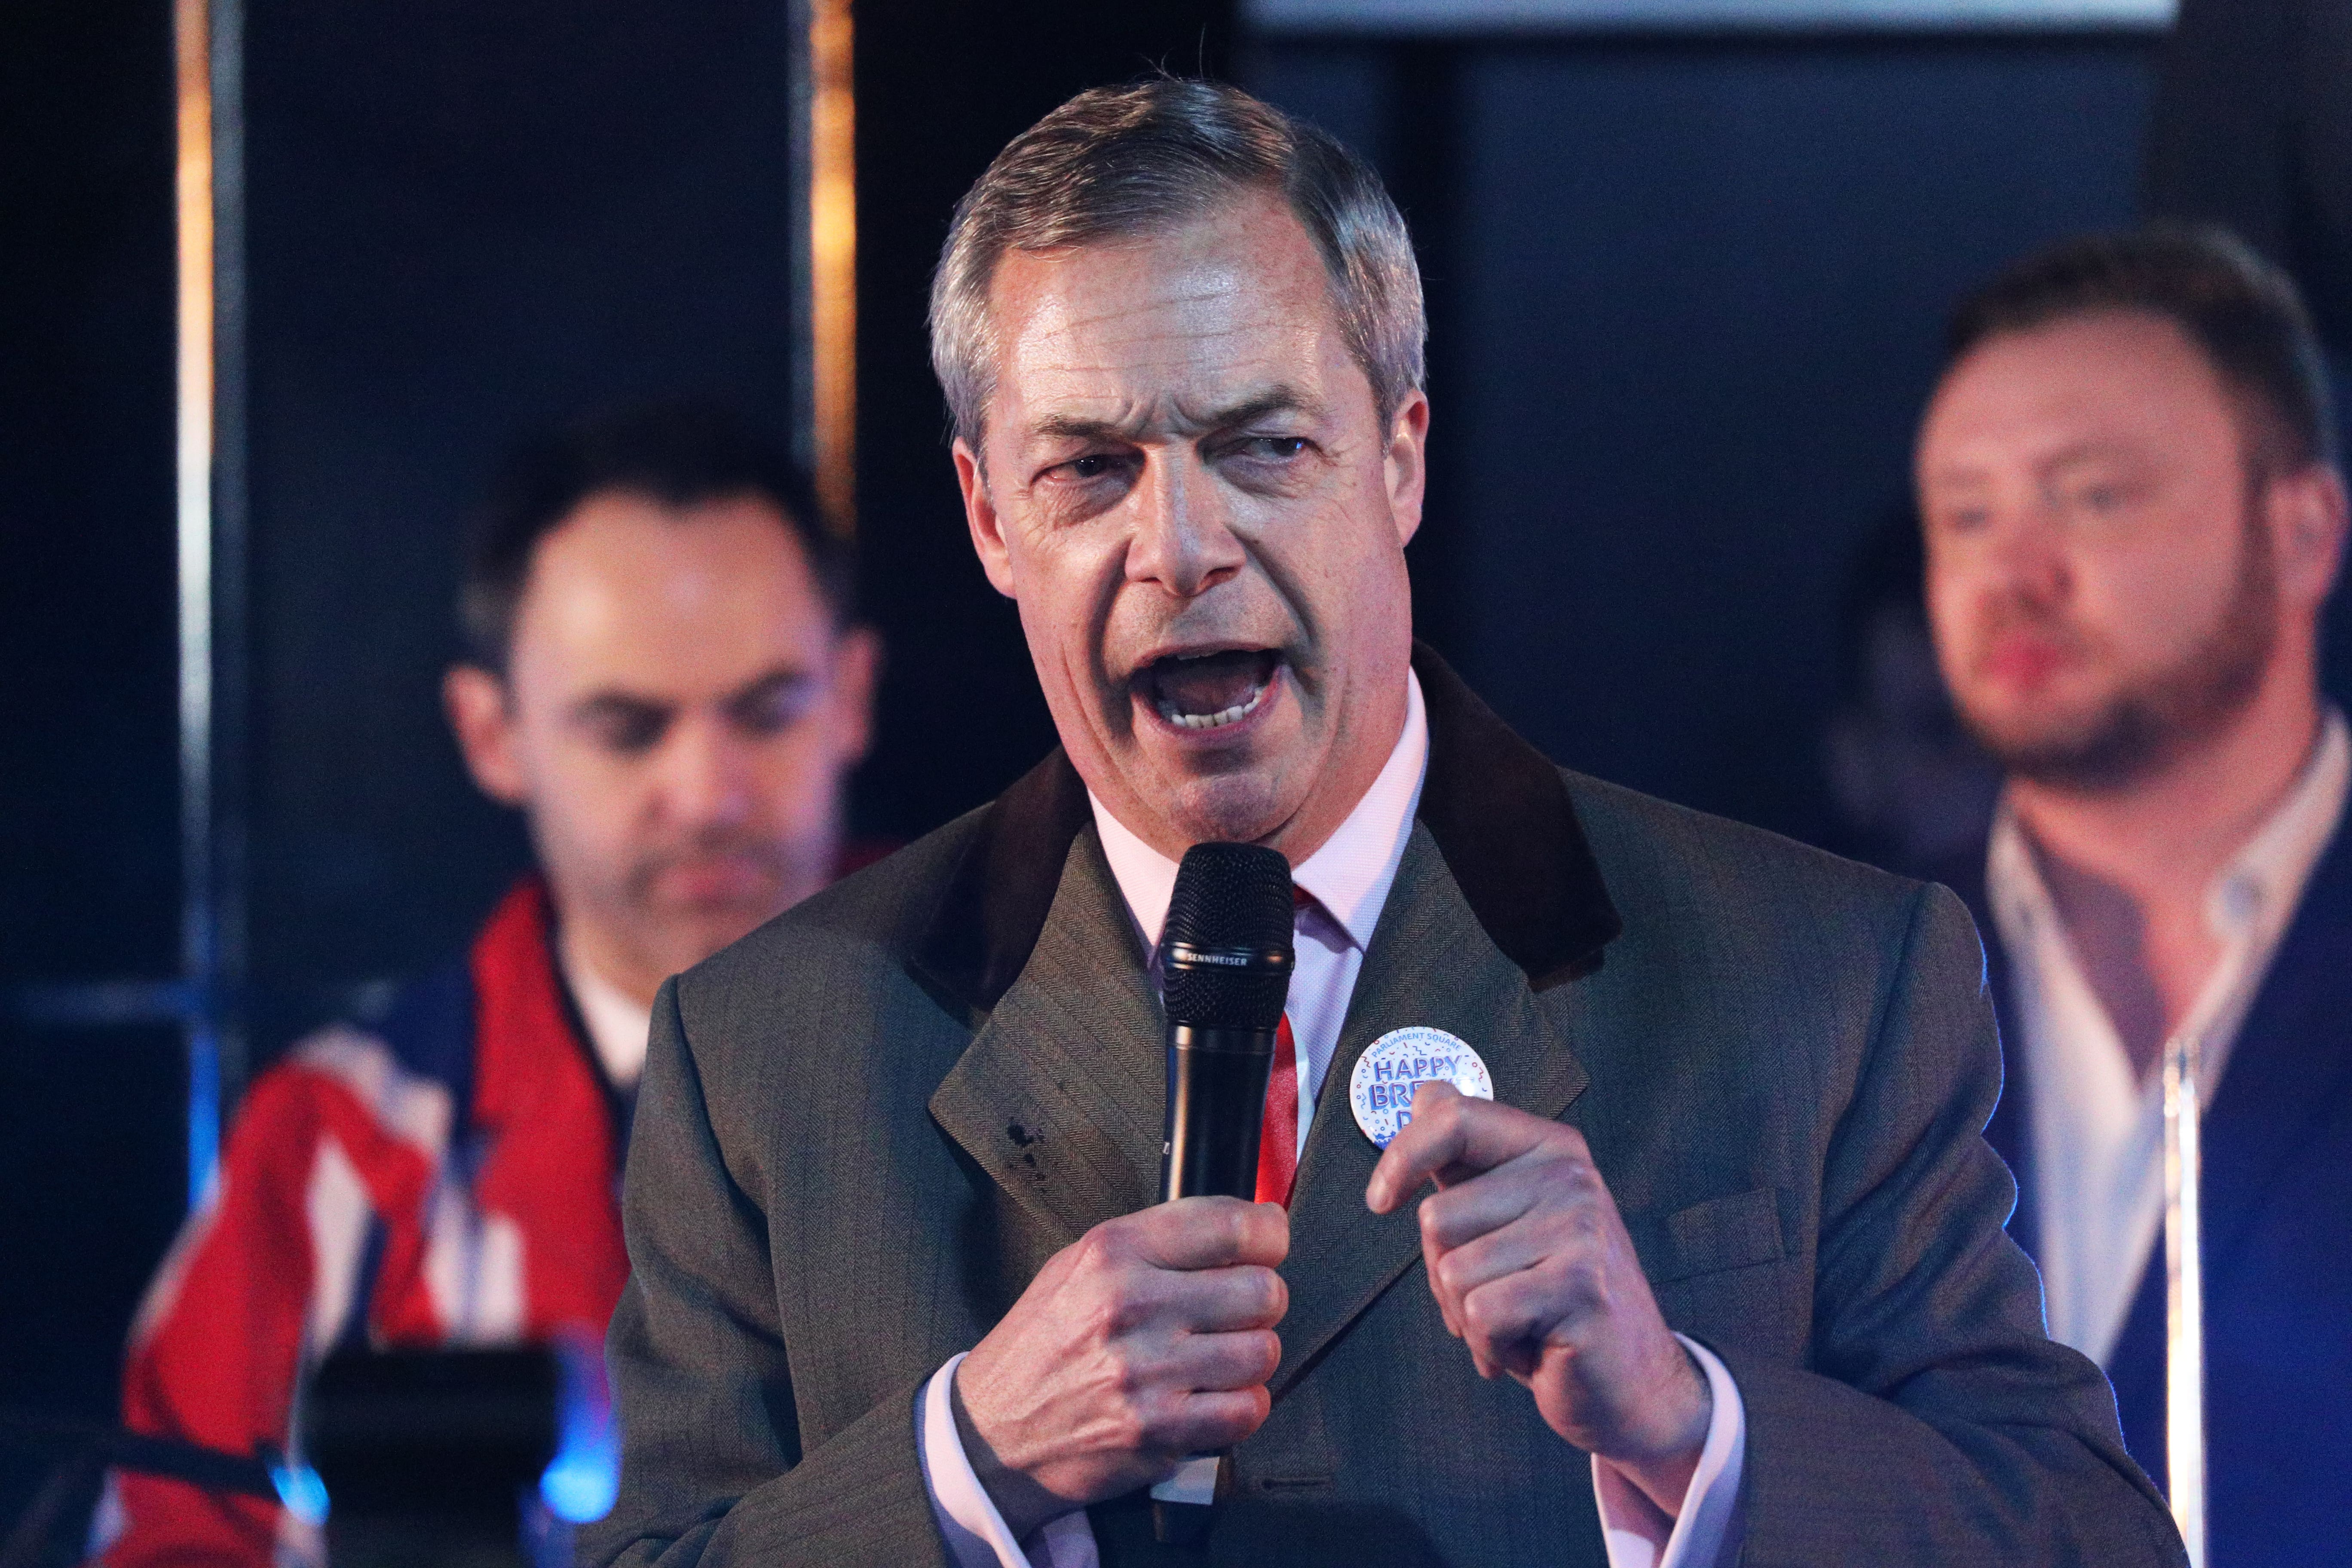 Nigel Farage says ex-NatWest chief pursued ‘woke agenda’